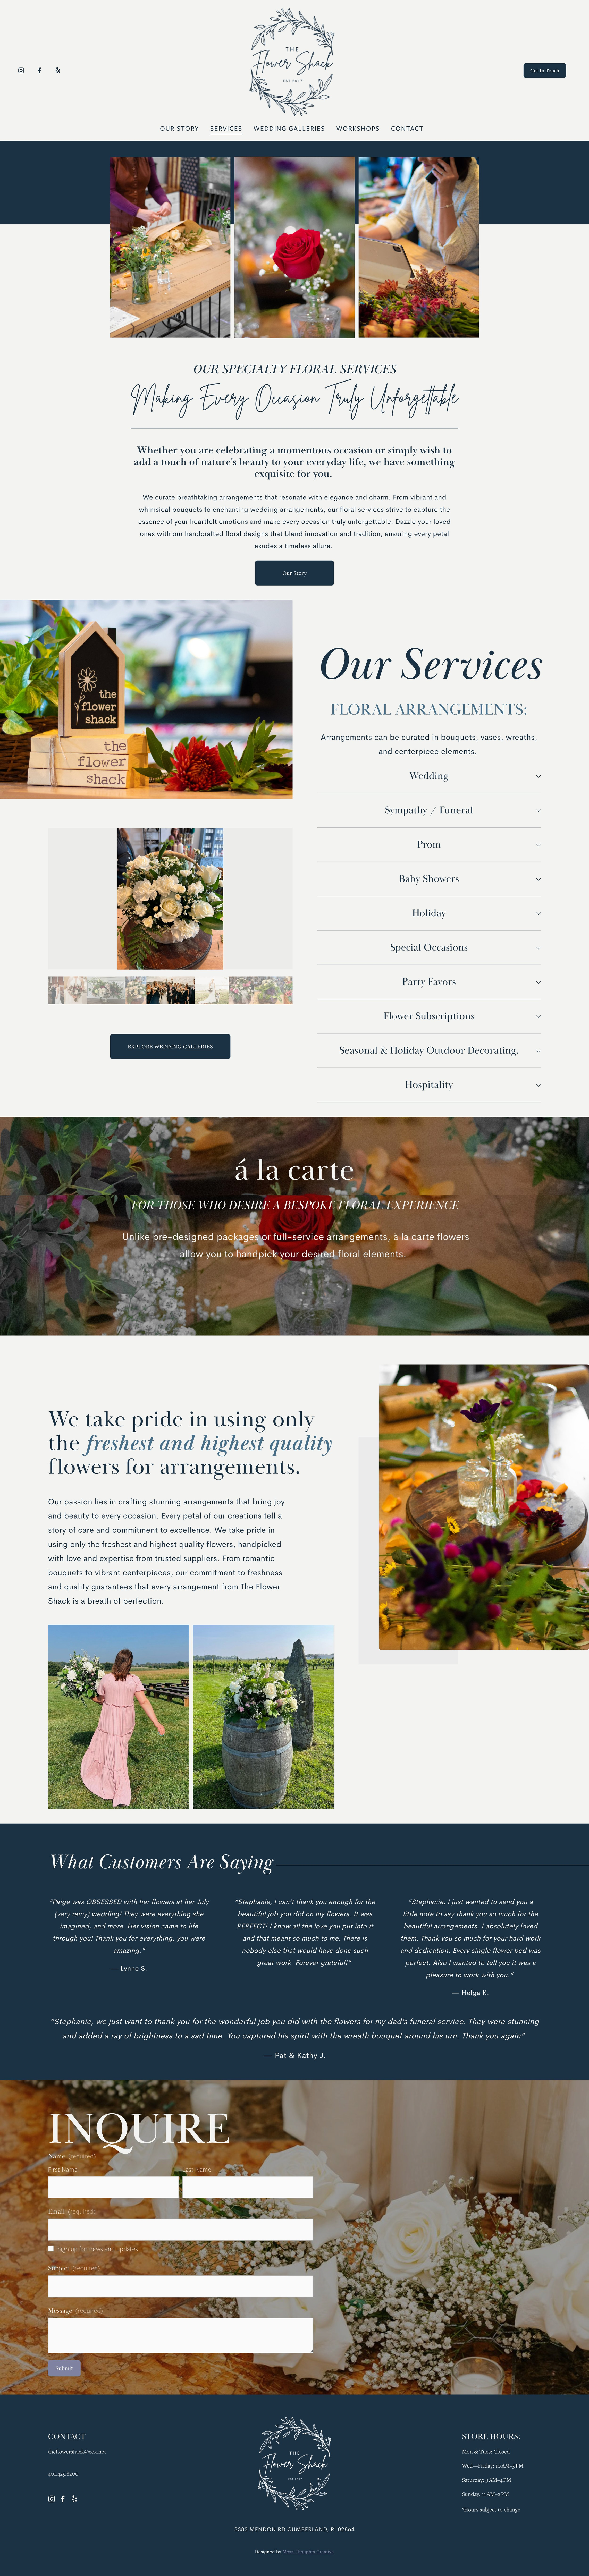 The_Flower_Shack_RI_Florist_Website_Design1.jpg